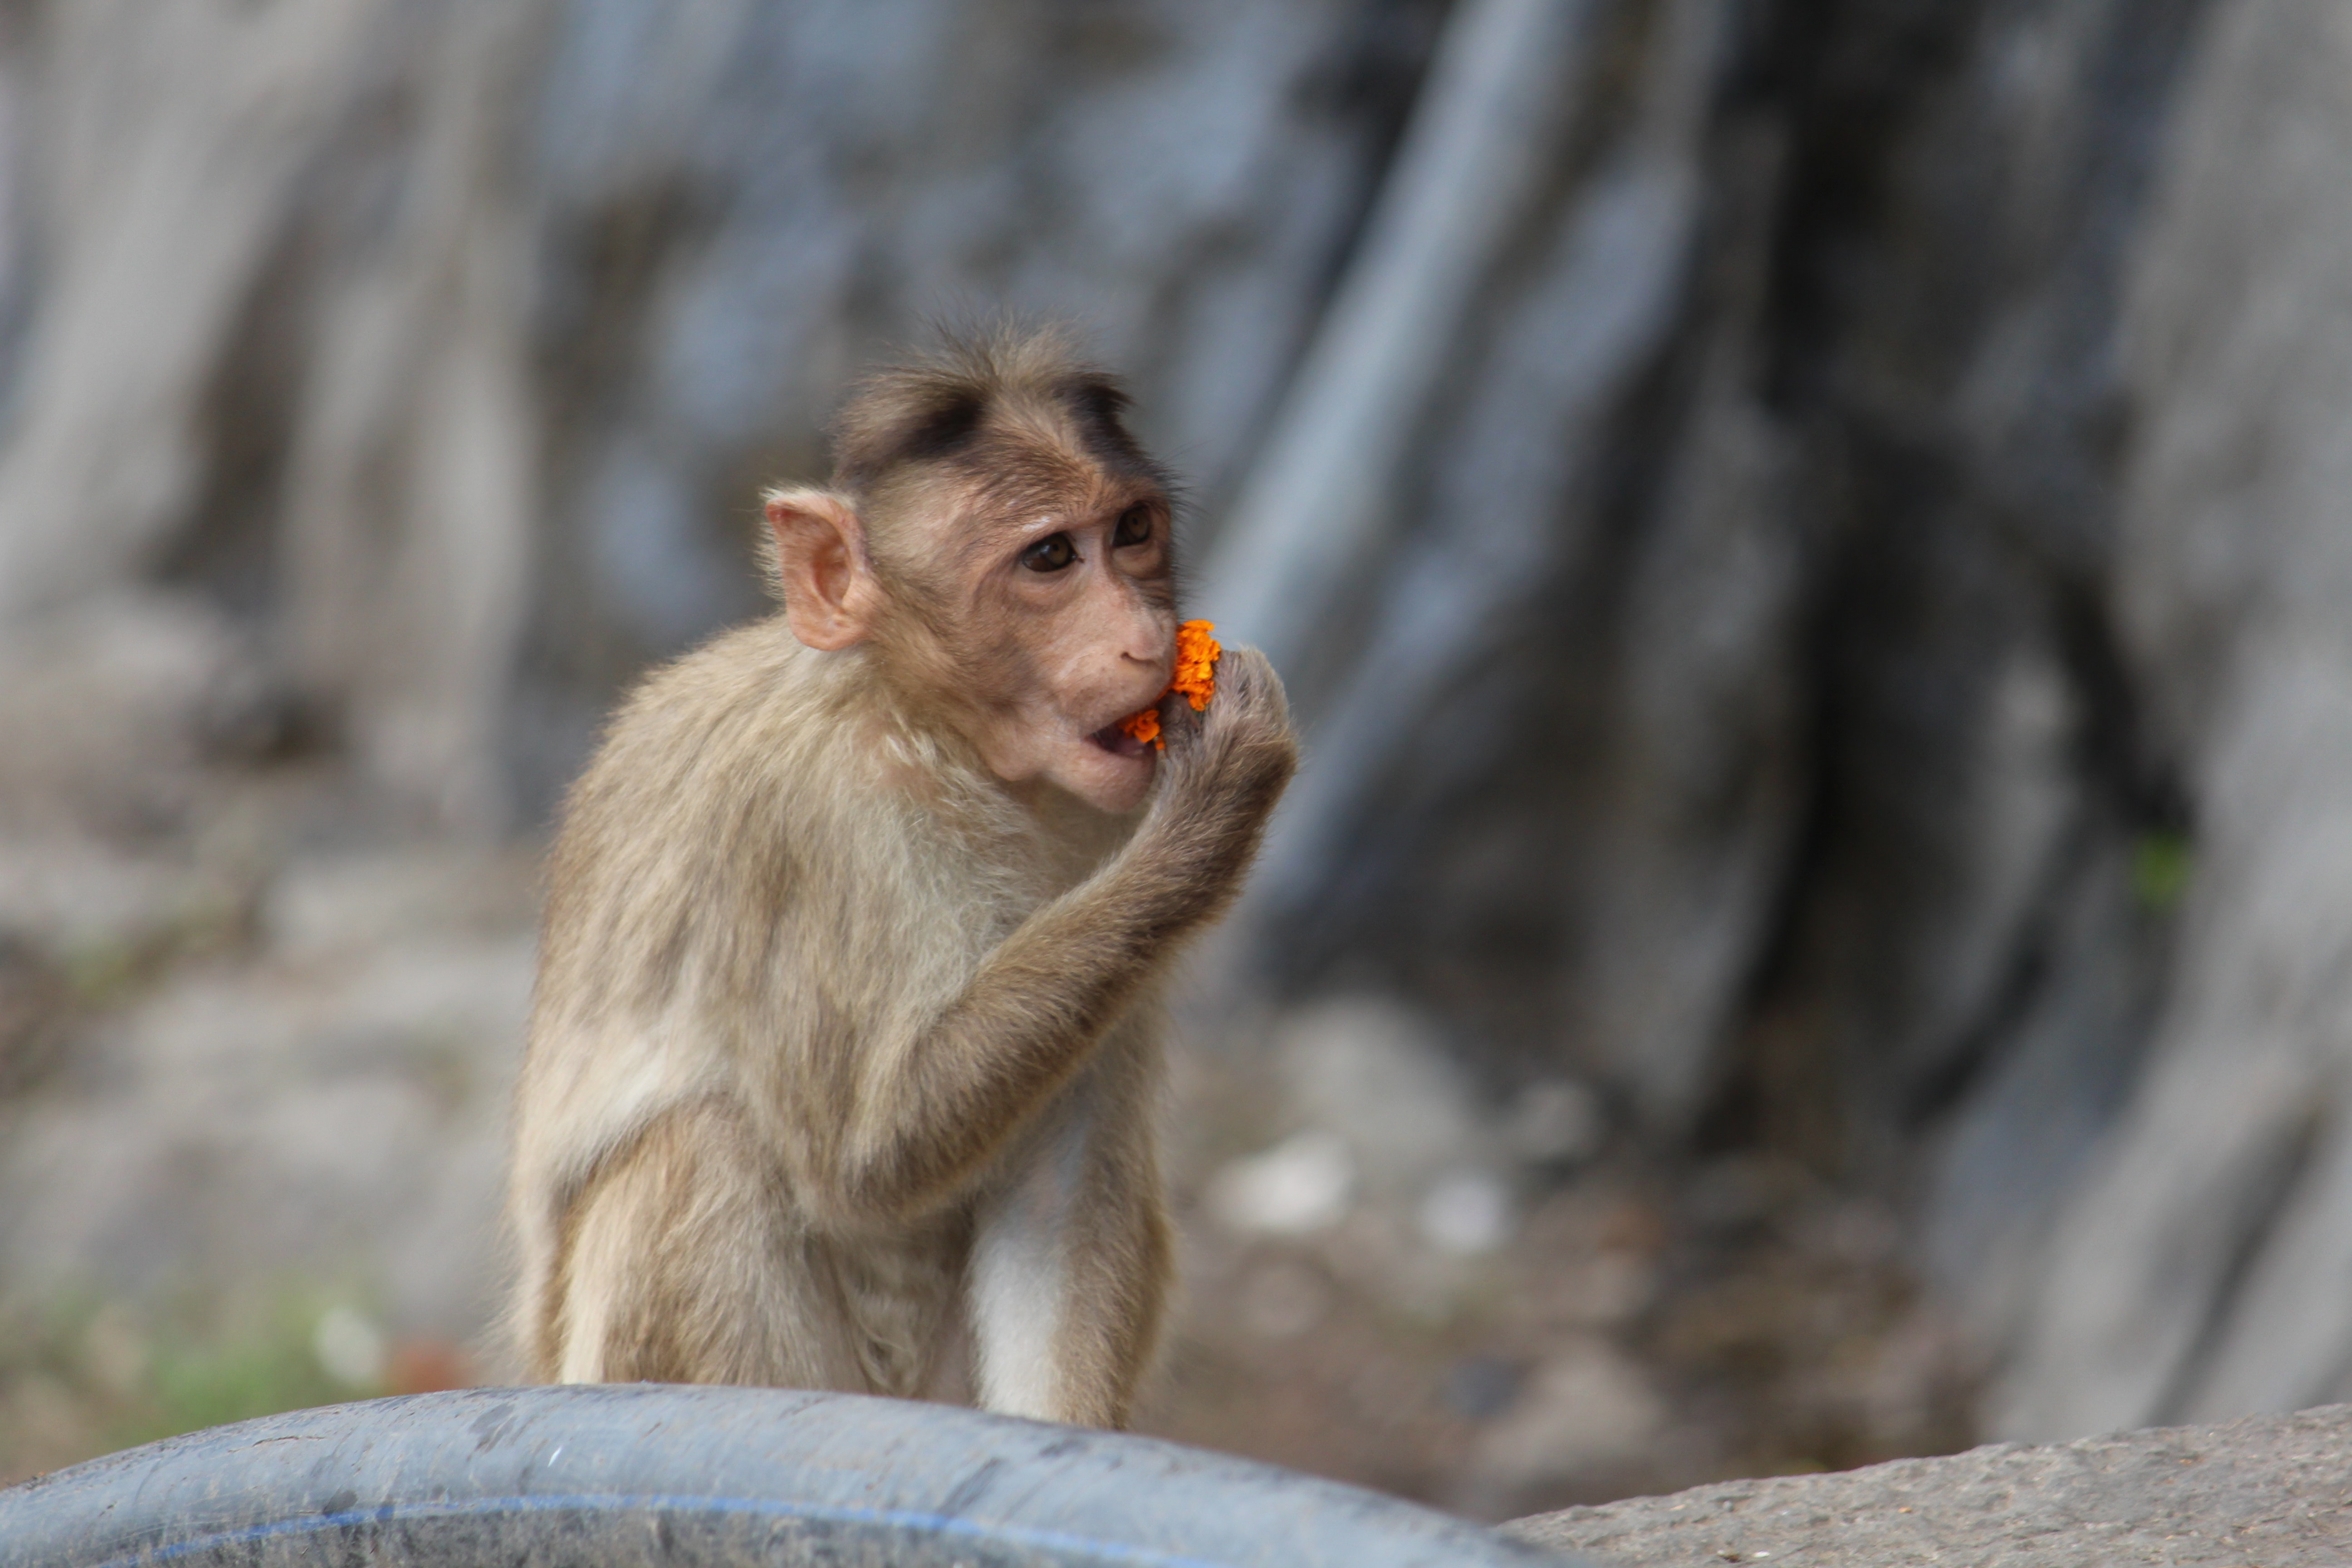 Baby rhesus macaque eating flowers